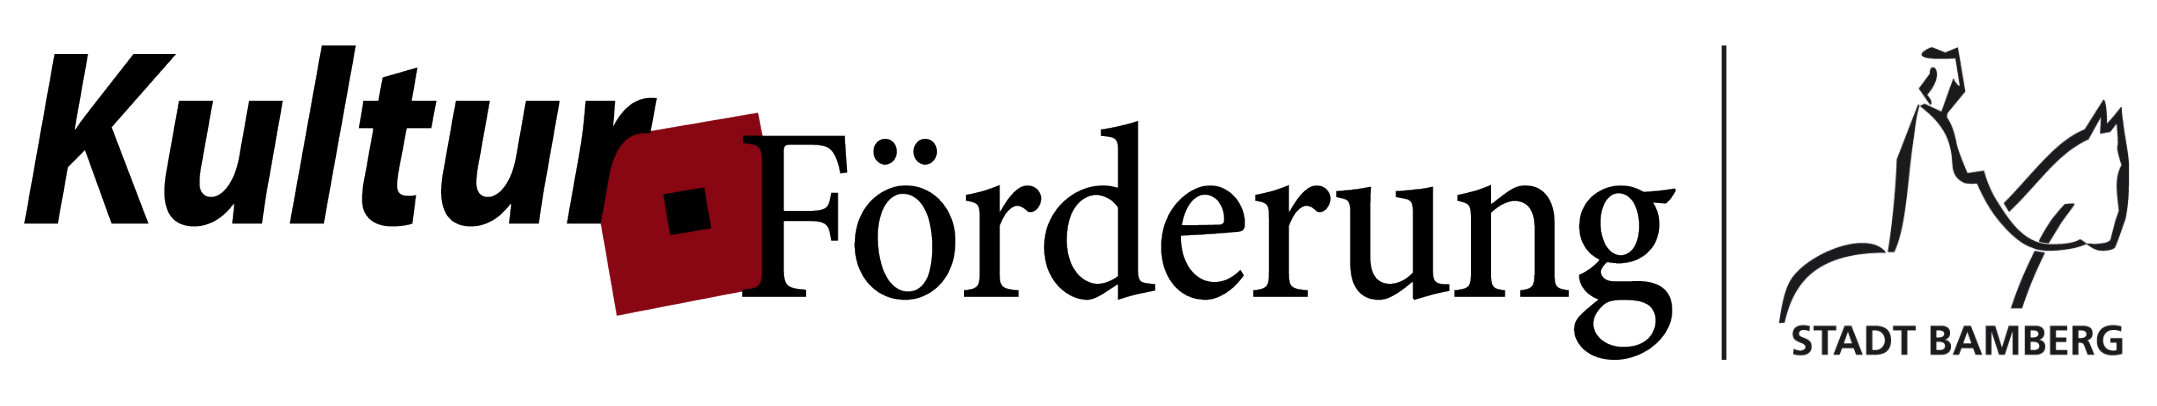 Kultur_Förderung_logo